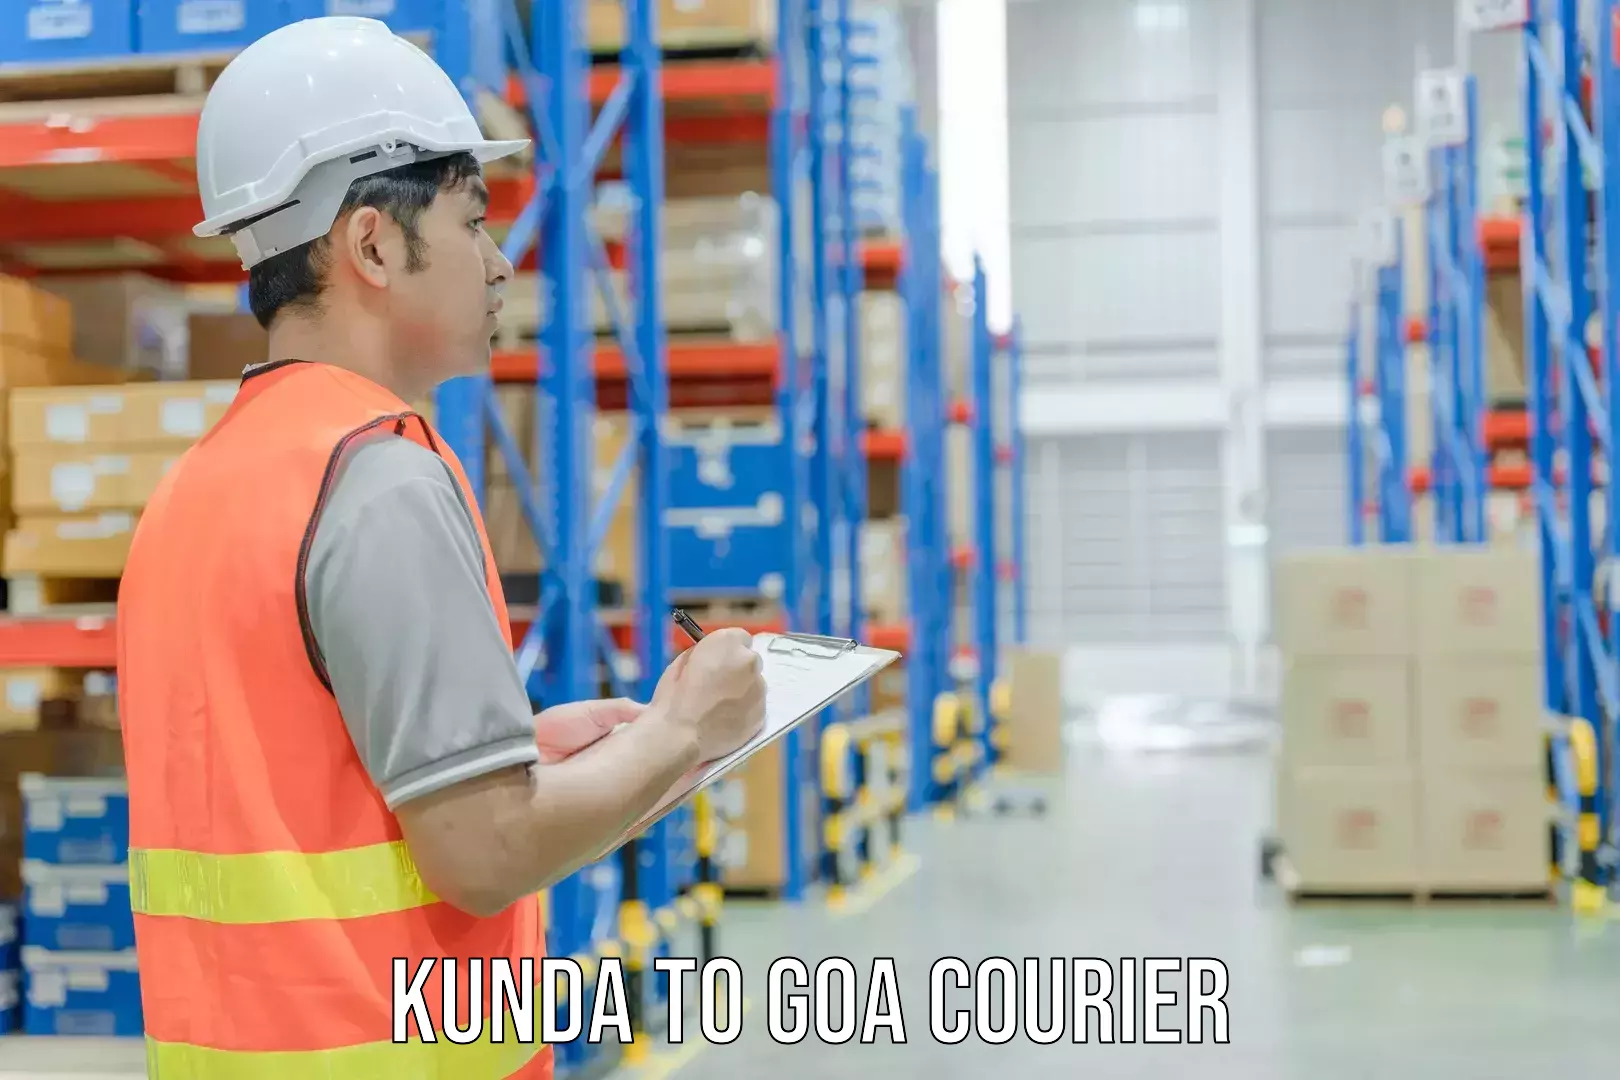 Postal and courier services Kunda to Mormugao Port